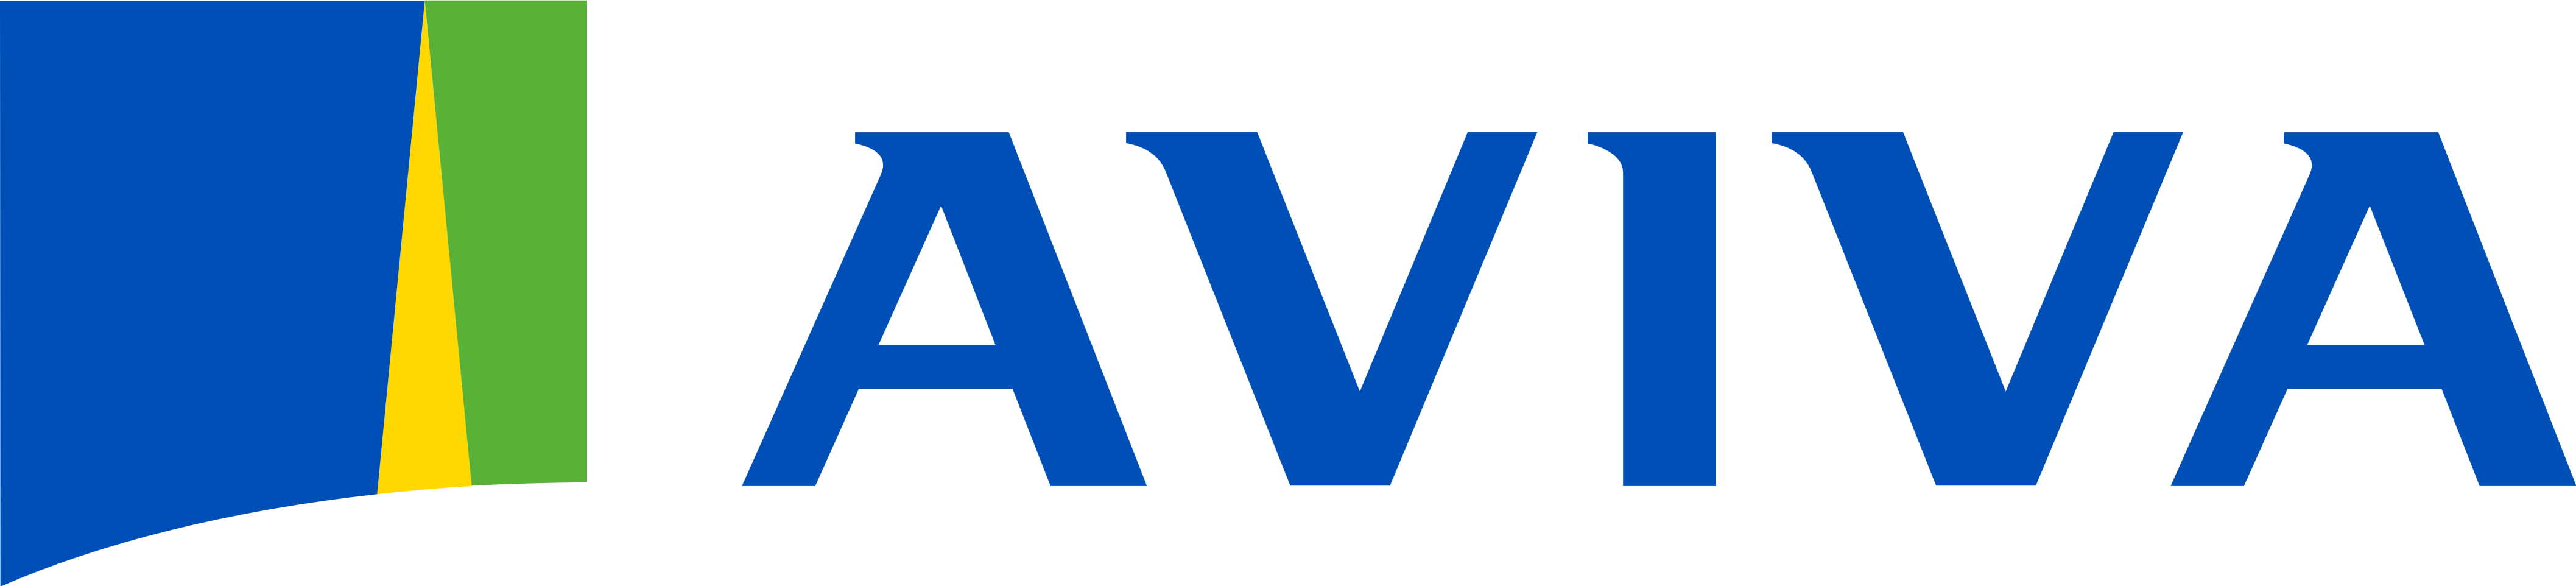 aviva company health insurance